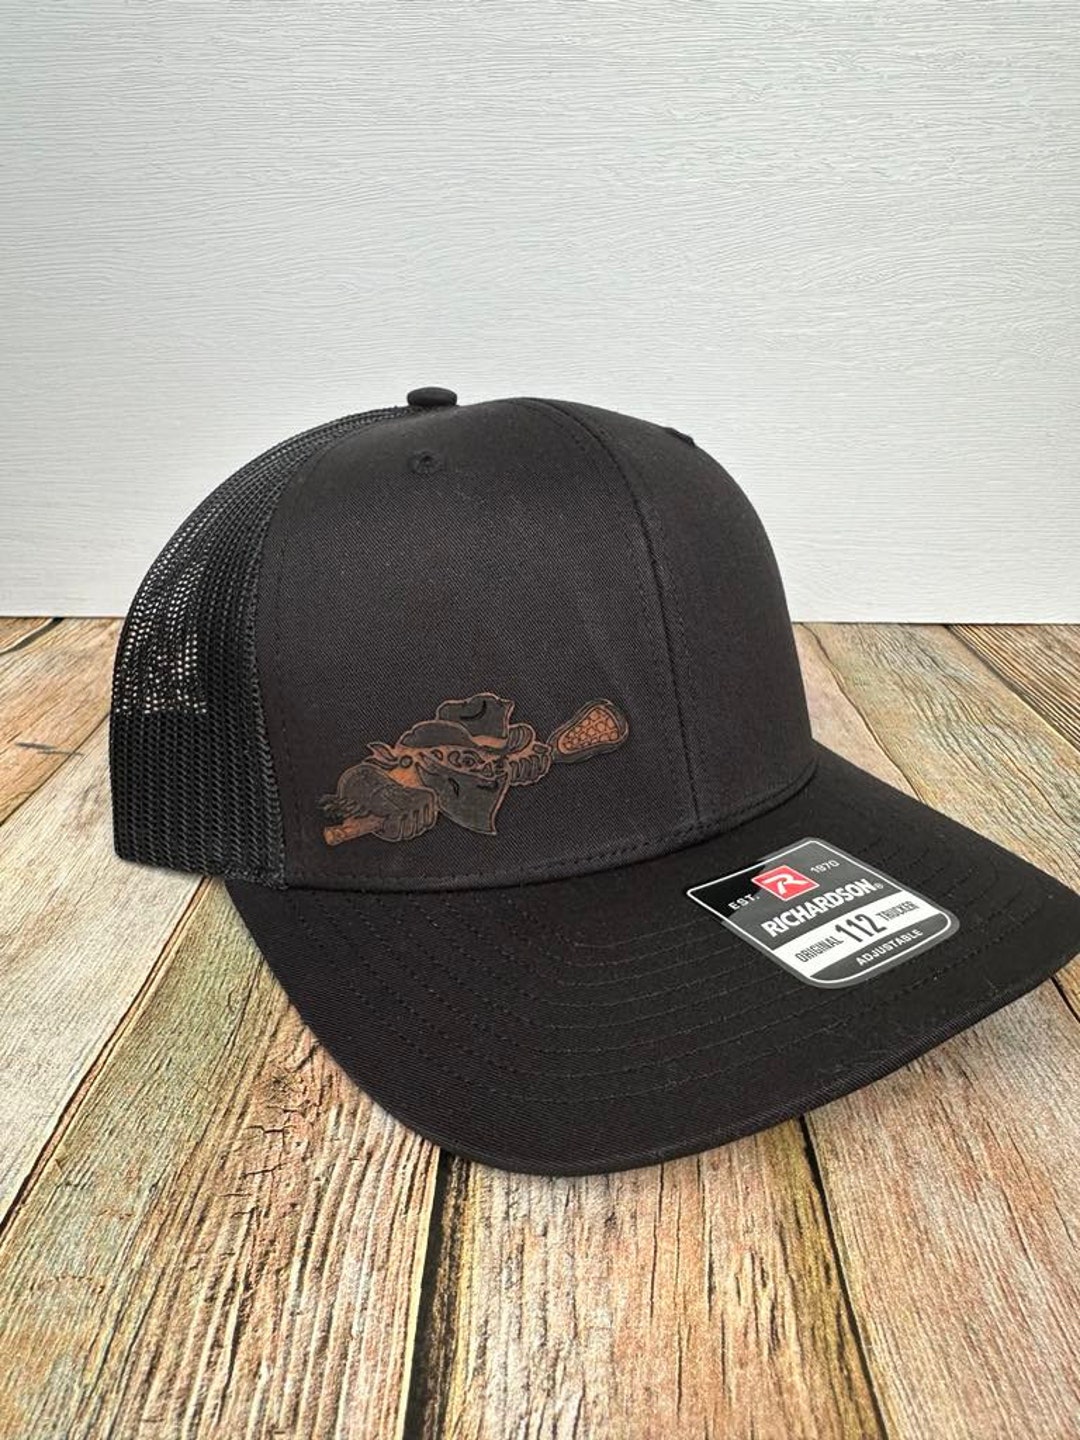 Buffalo Style Trucker Hat Buffalo Leather BUF 716 Bandits Gift - Etsy